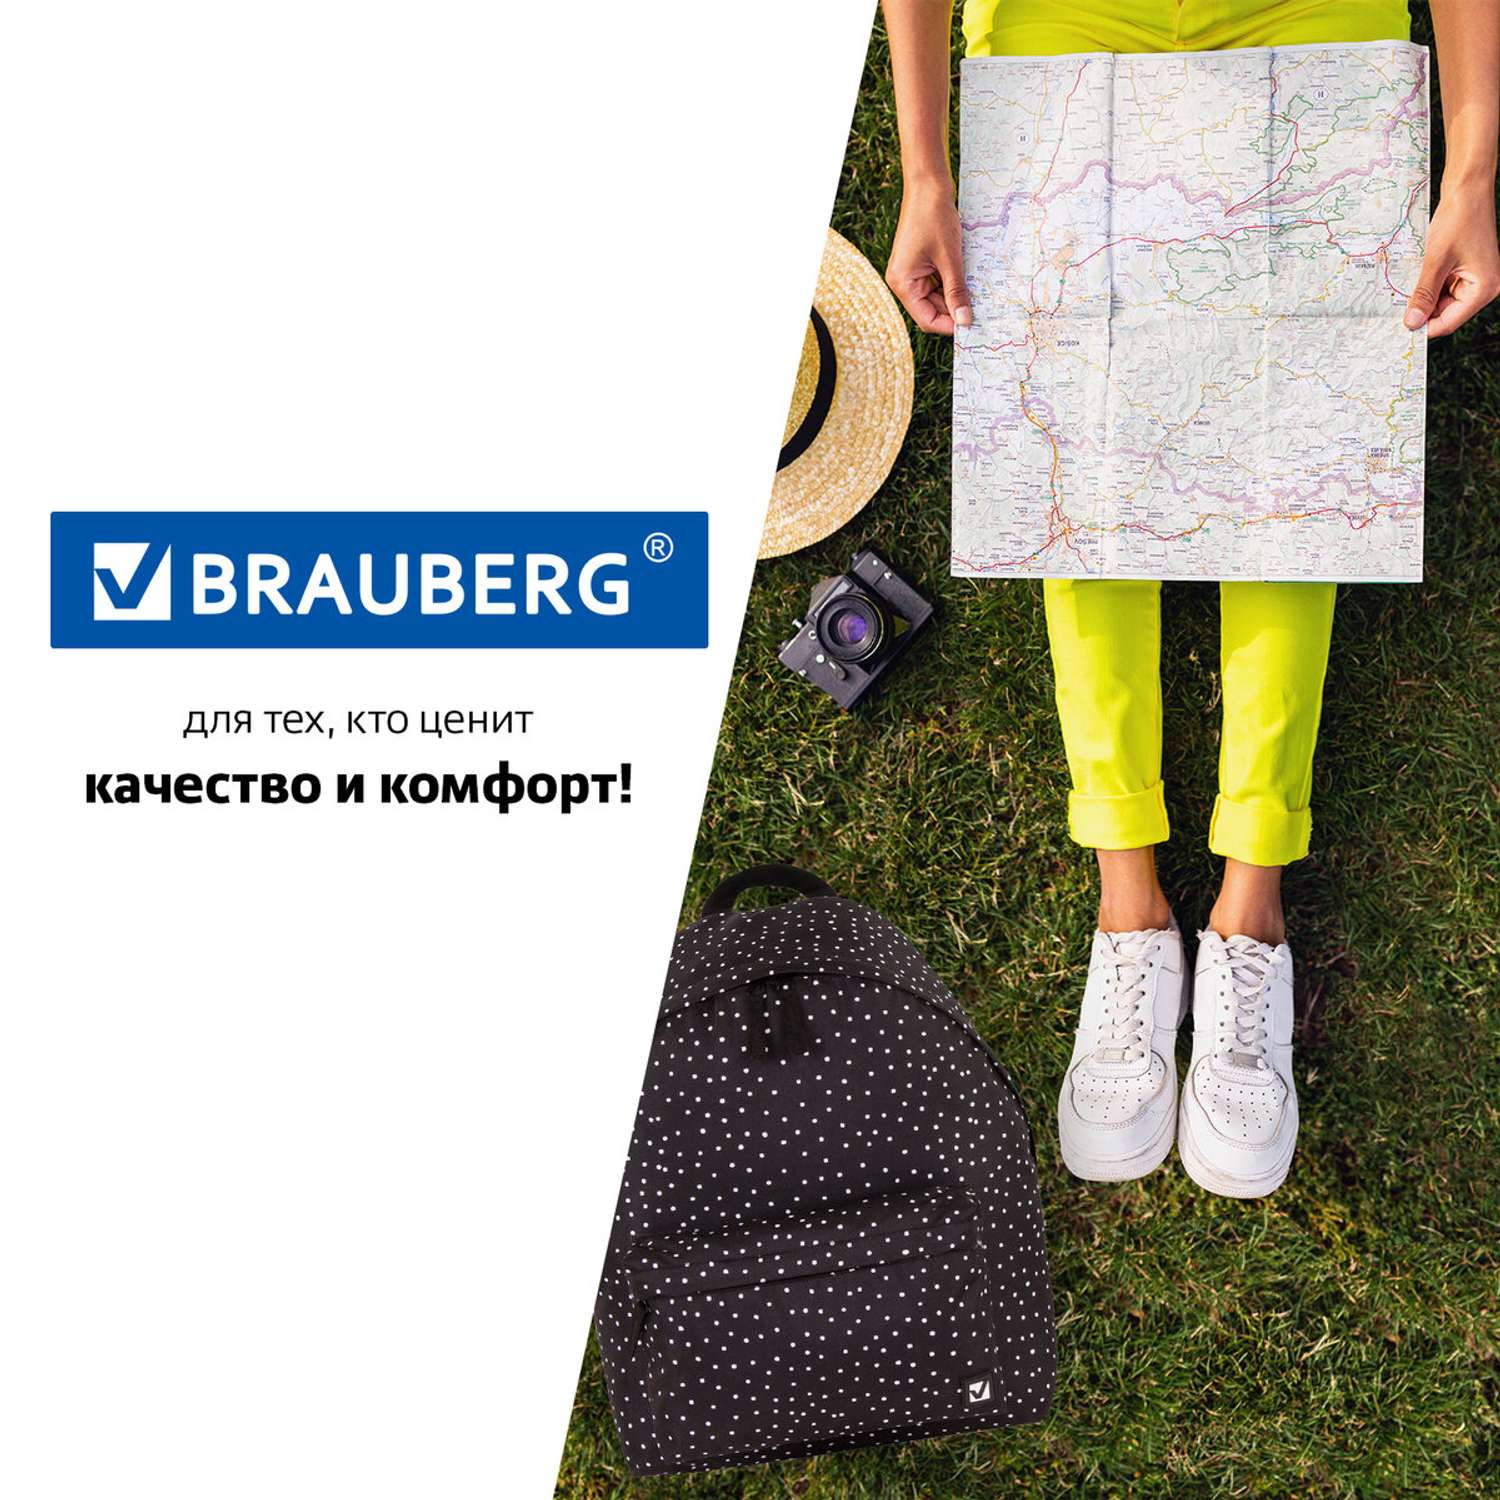 Рюкзак Brauberg универсальный сити-формат черный в горошек - фото 12